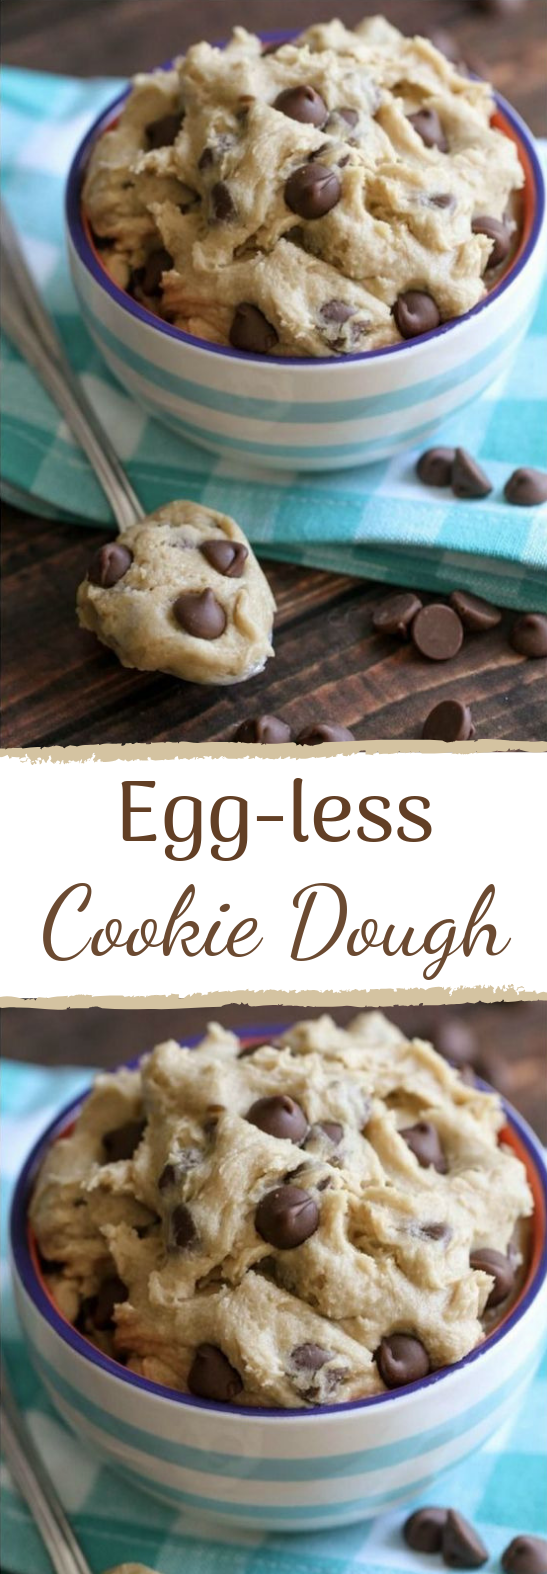 Edible Cookie Dough #dough #desserts